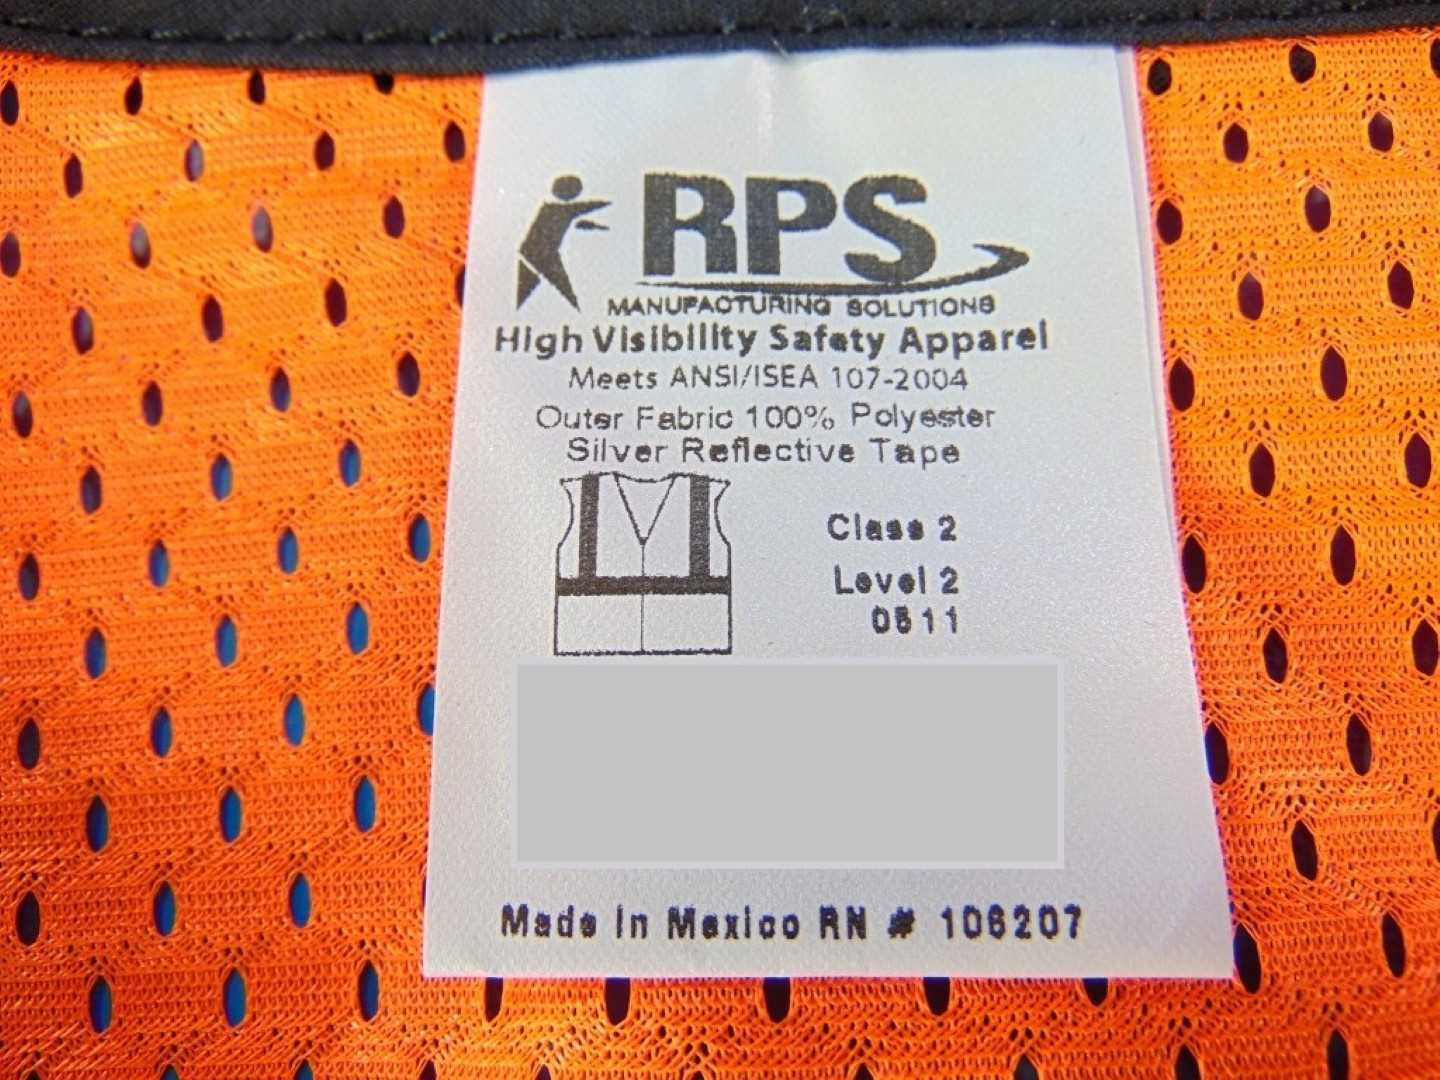 ORR Safety Orange Vest Regular Large) OSC-ORR-35-R